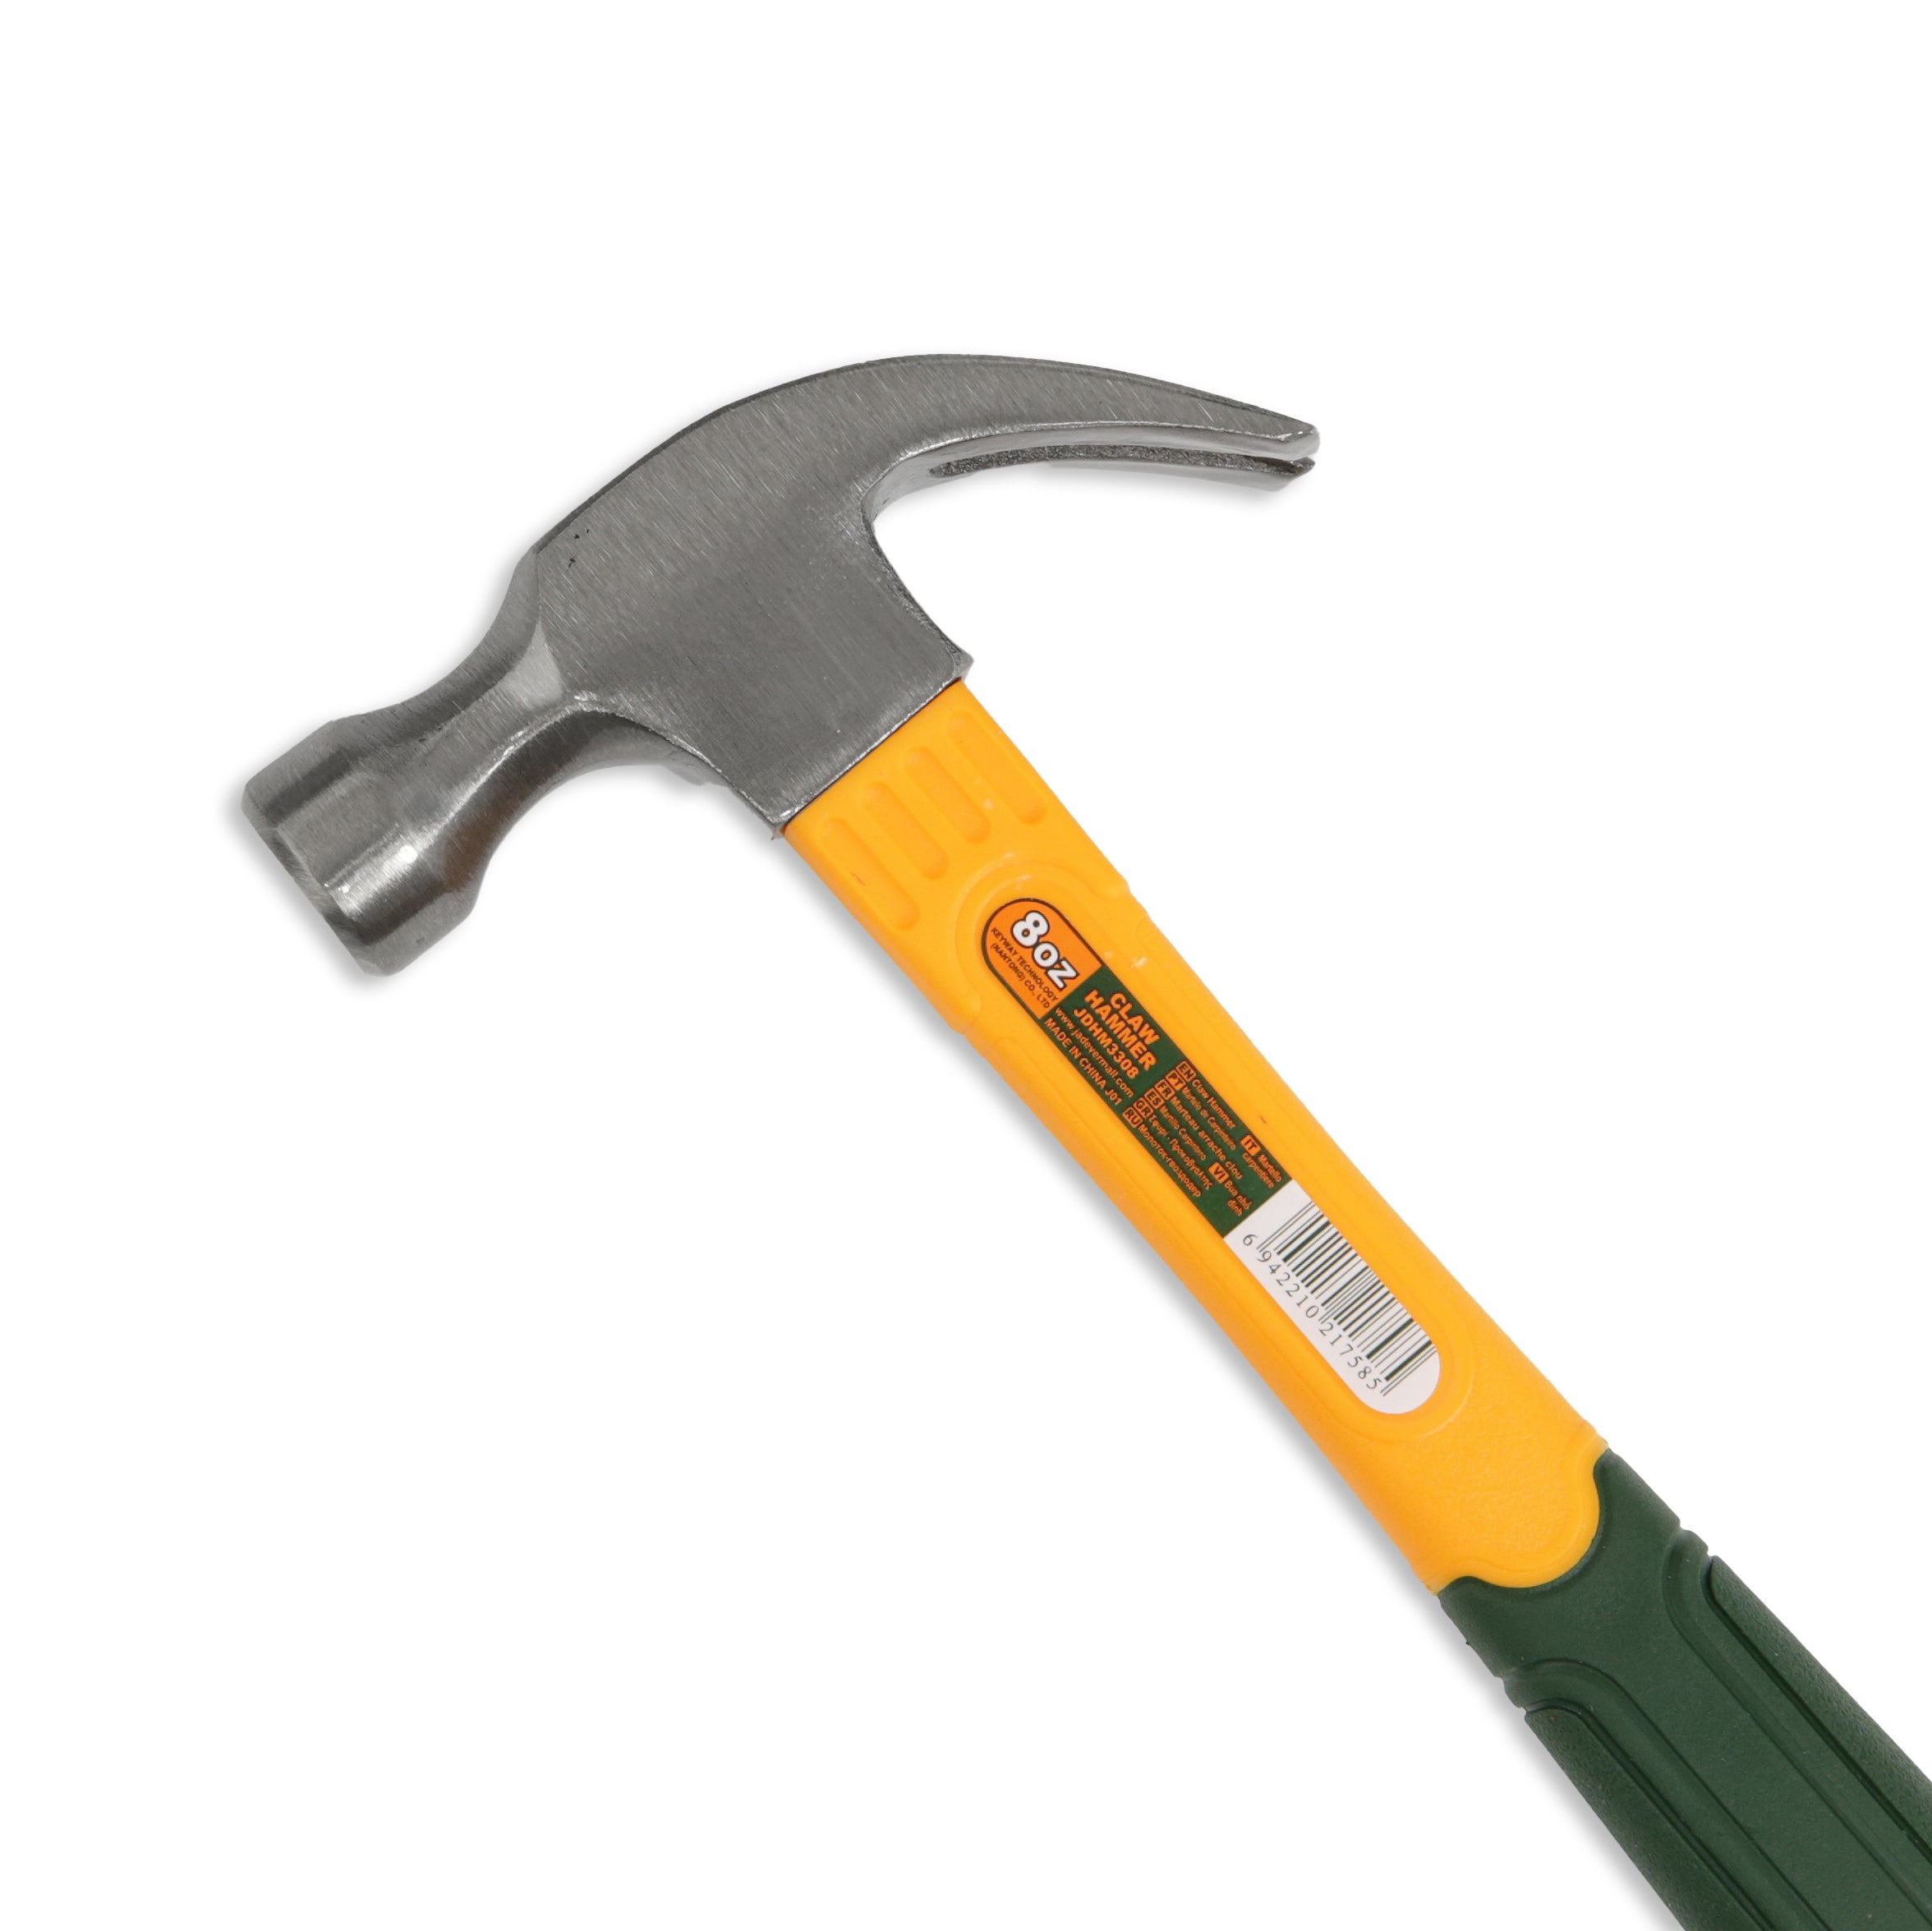 Jadever 8oz Claw Hammer